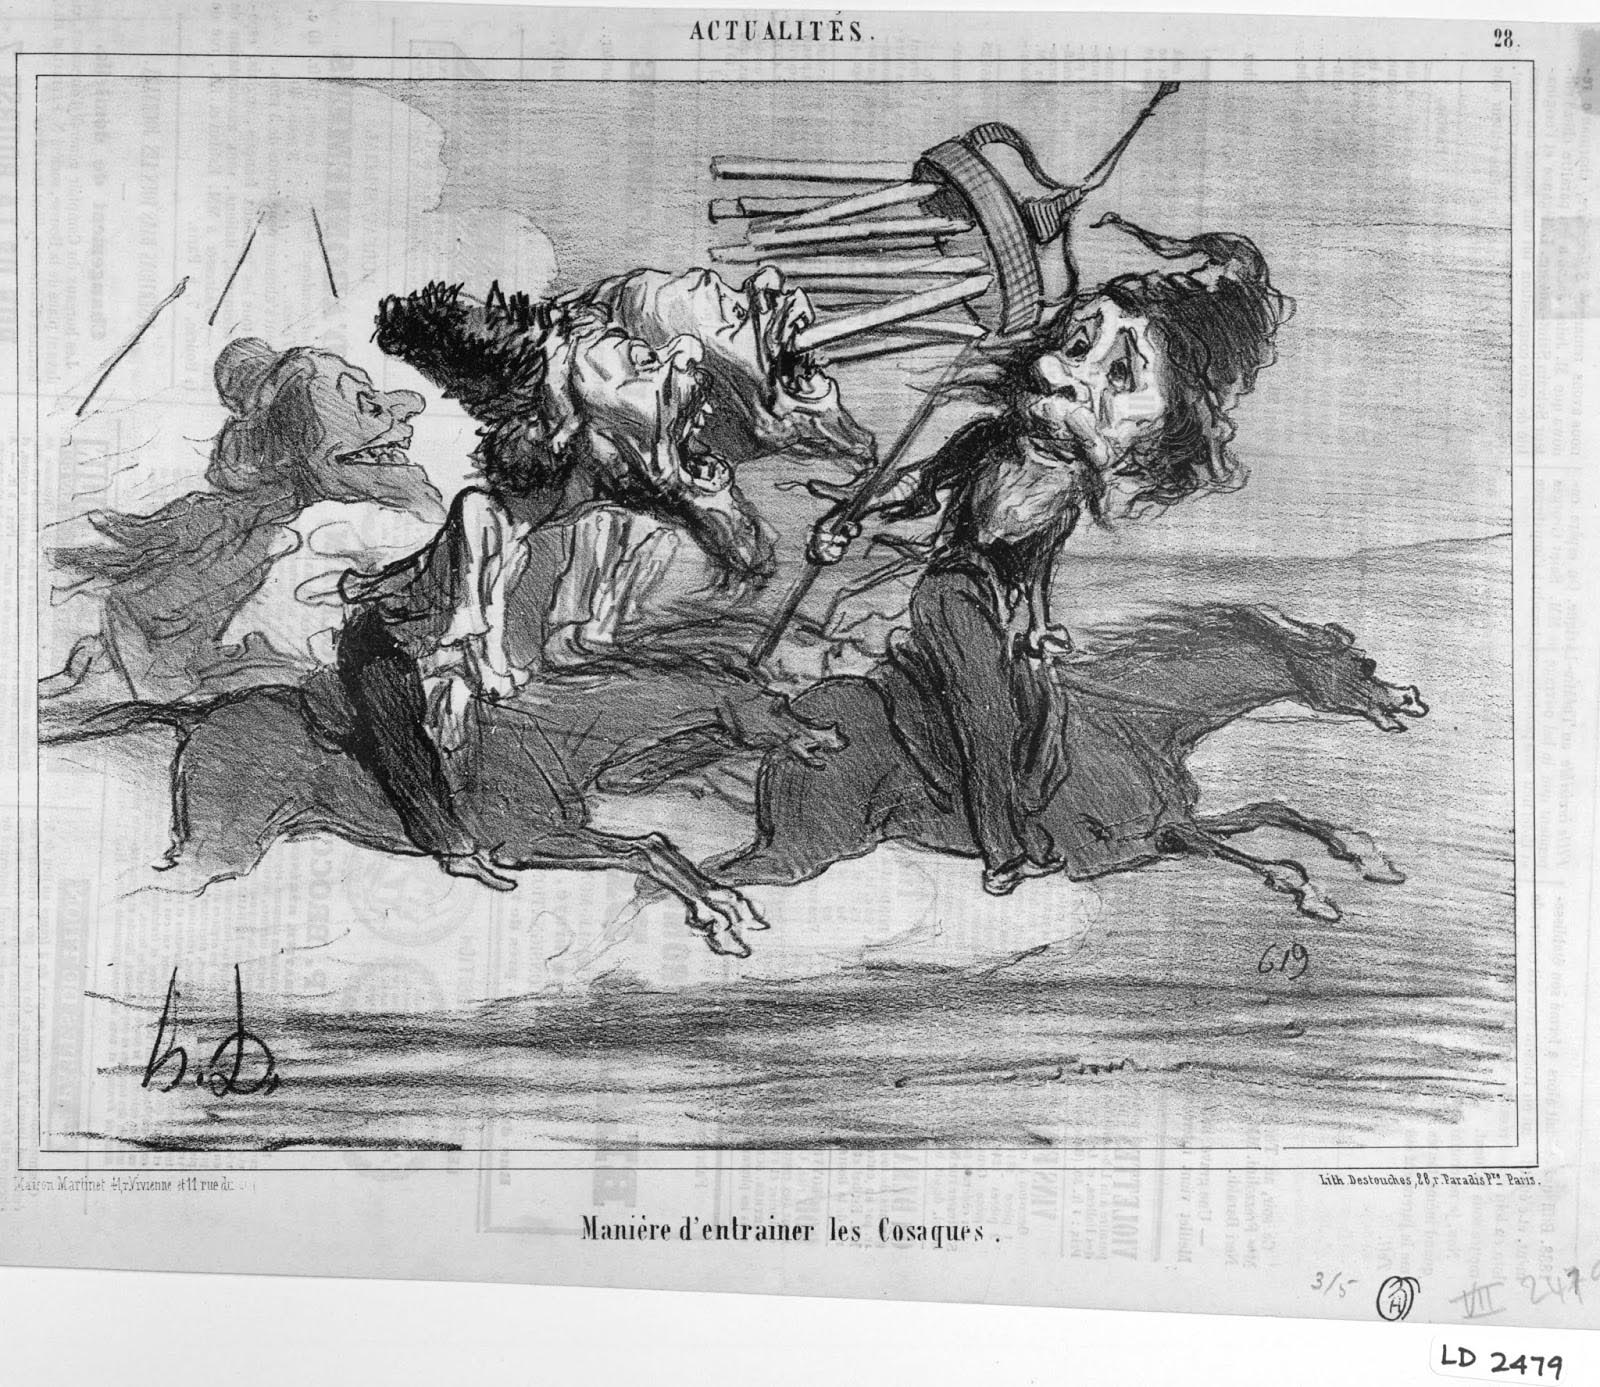 Honoré Daumier. Actualités, no. 28; Les Cosaques pour rire (Laughing at the Cossacks), no. 16. Le Charivari. April 4, 1854. LD 2479